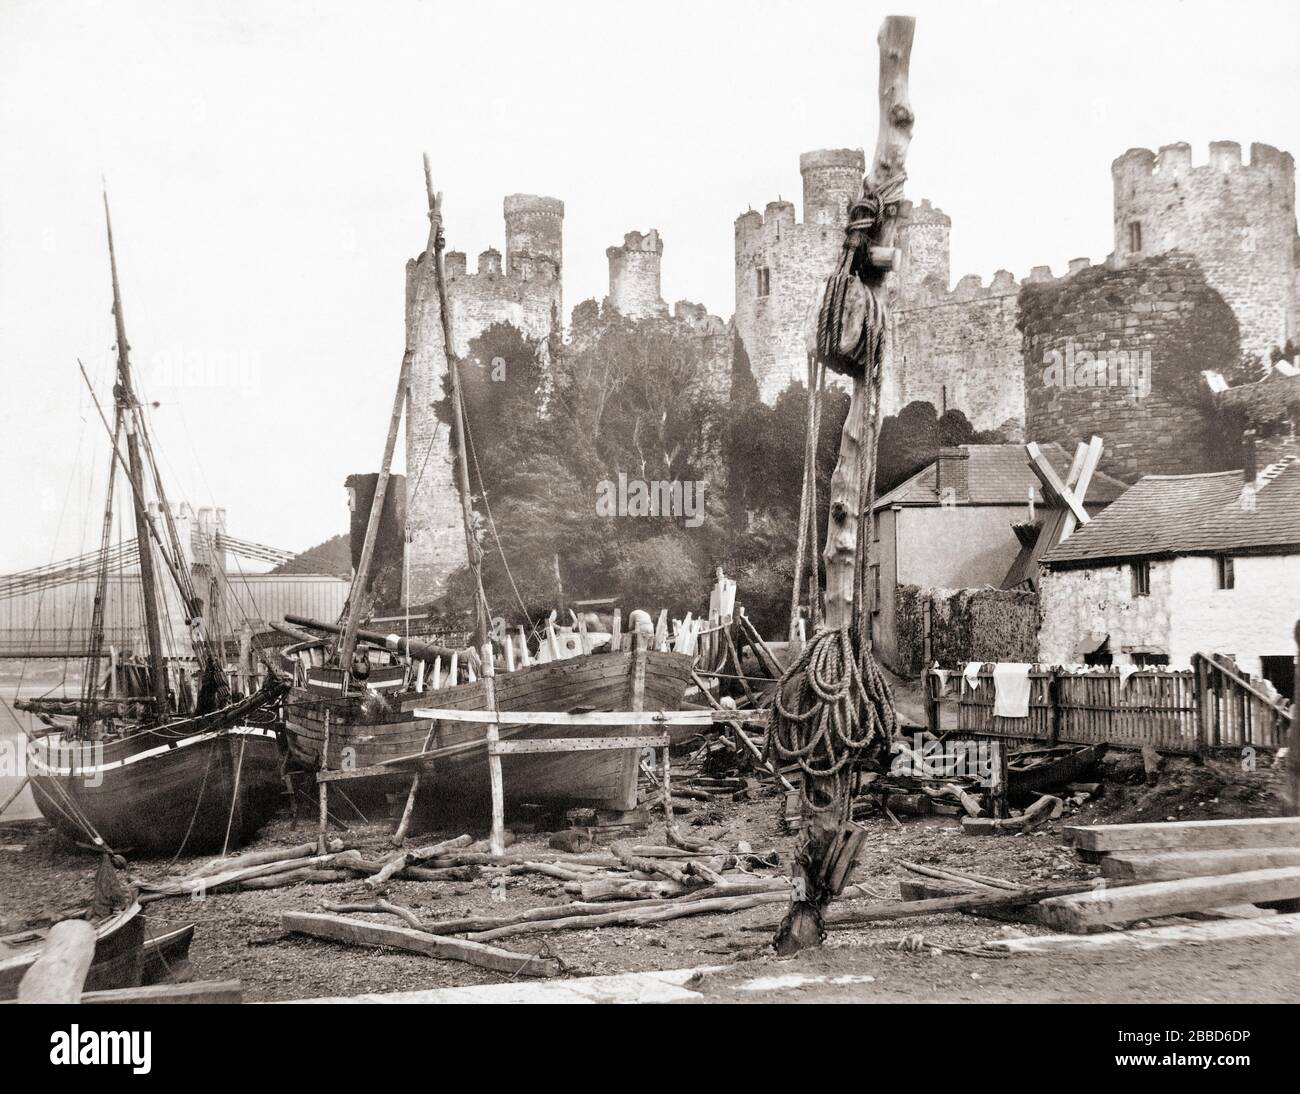 Schloss Conwy mit Booten im Vordergrund, Conwy, Wales, Großbritannien. Etwa 1850 vom englischen Fotografen Alfred Rosling, 1802 - 1882 aufgenommen und von Francis Frith herausgegeben. Stockfoto